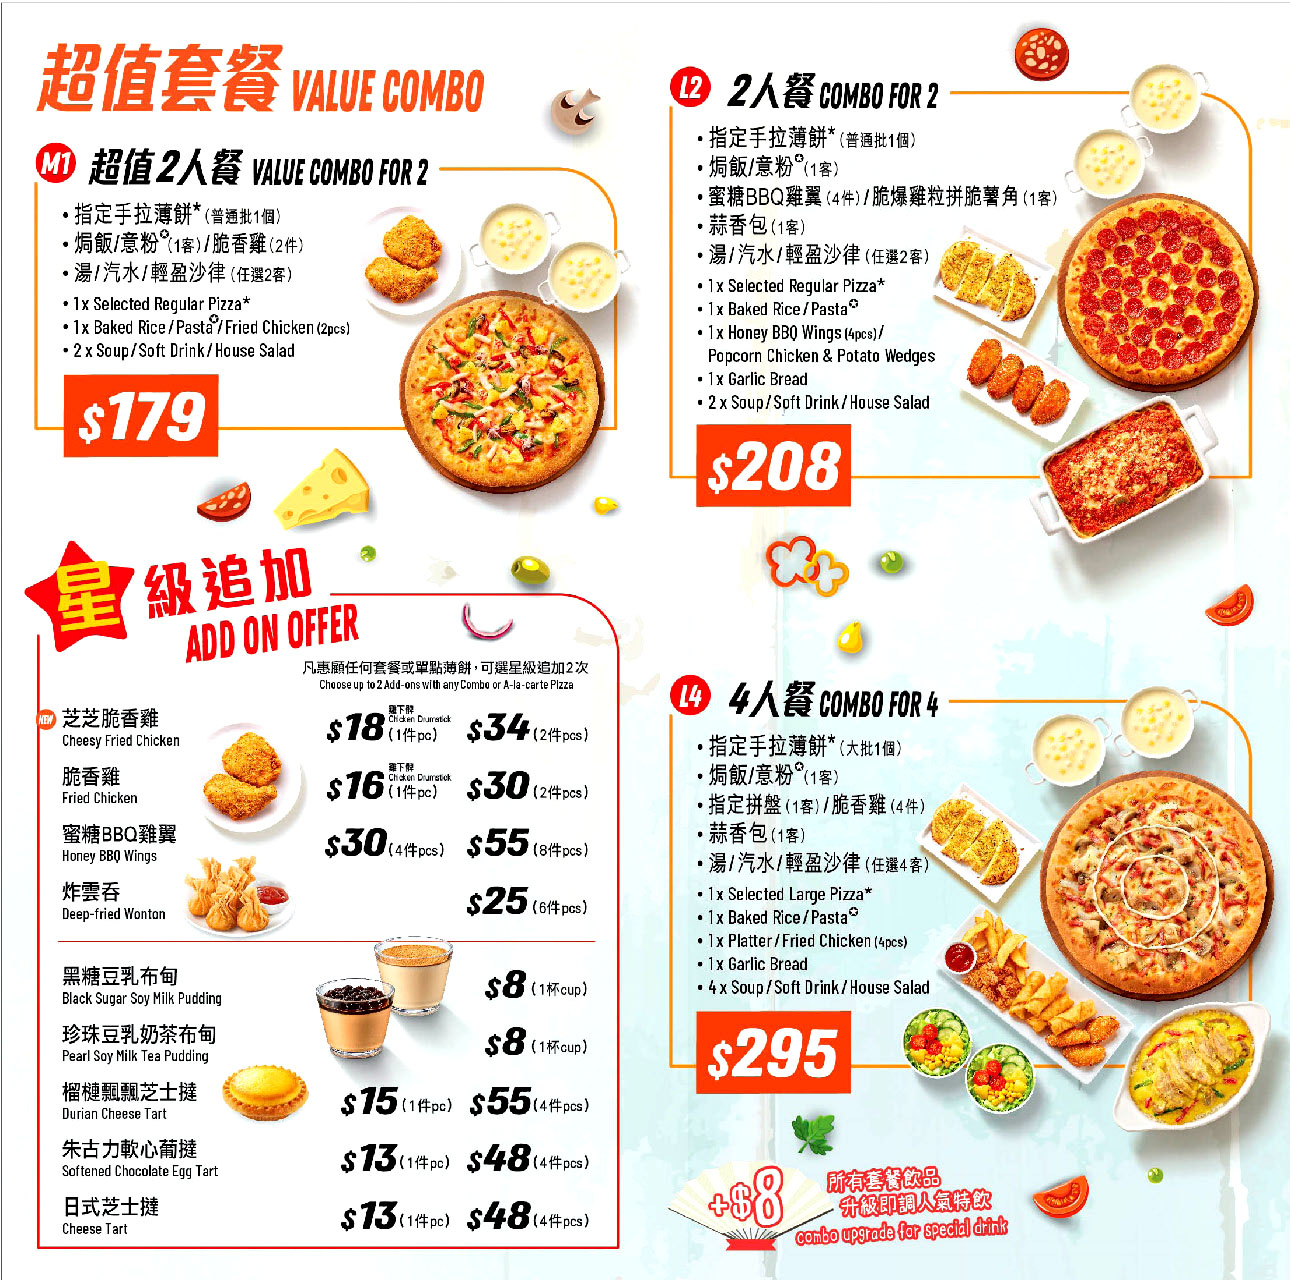 PHD 薄餅博士 pizza hut delivery take away menu hong kong - 薄餅速遞服務外賣電話餐廳餐飲美食套餐牌價目表